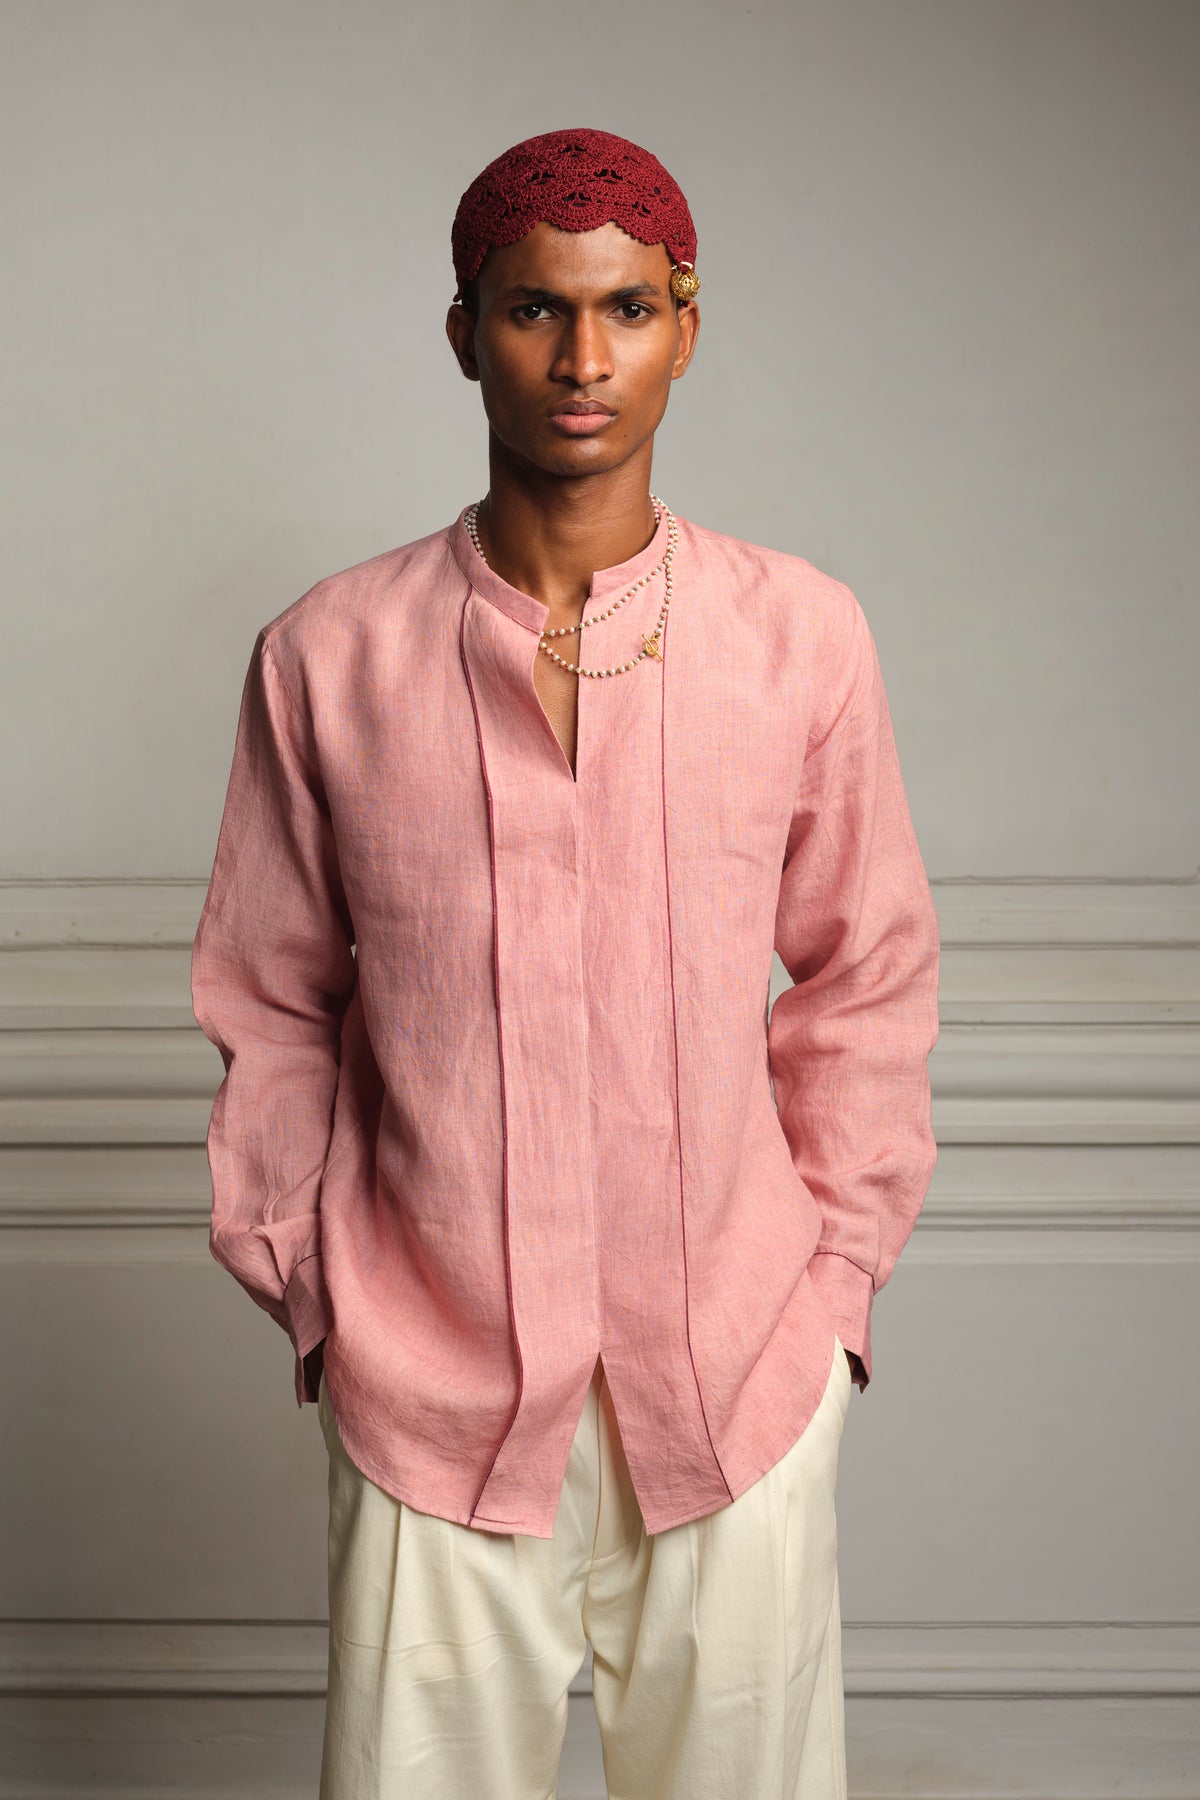 Handwoven linen shirt set